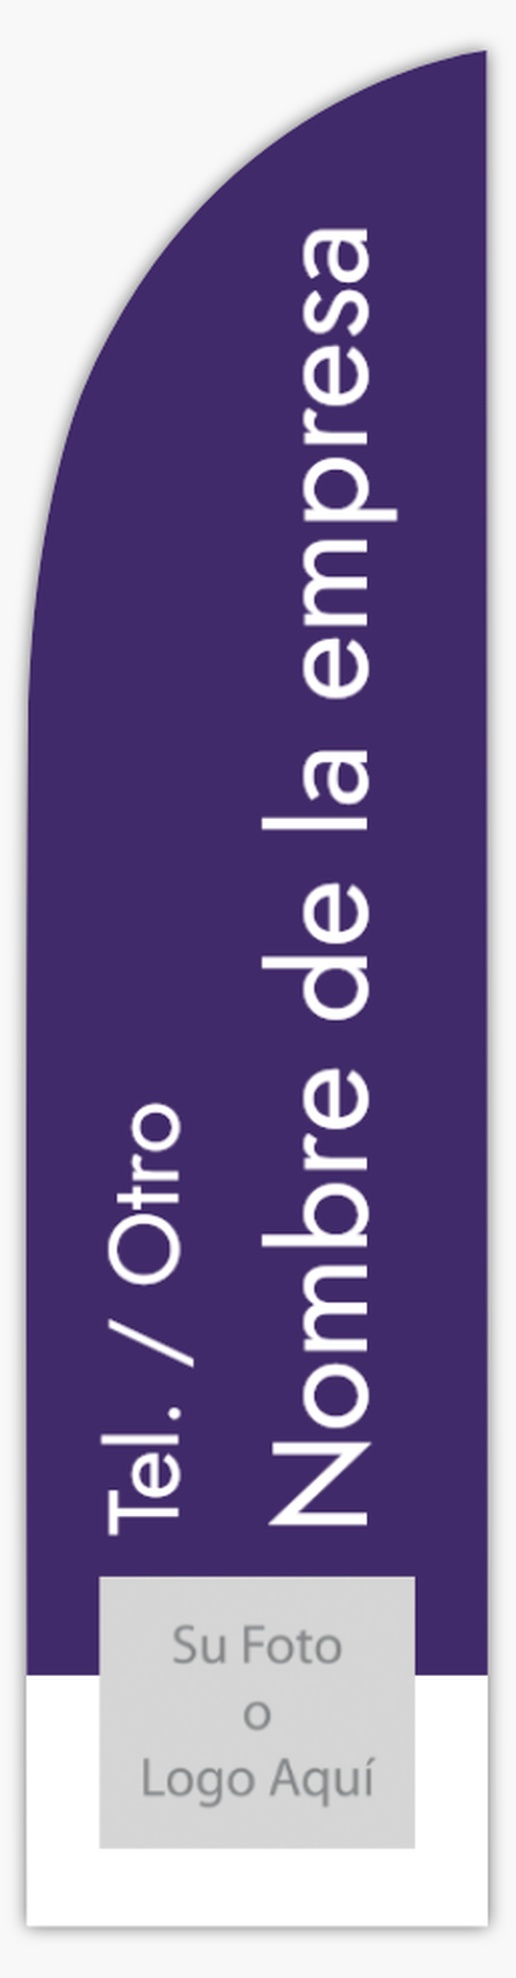 Un simple sauber diseño violeta blanco con 1 imágenes